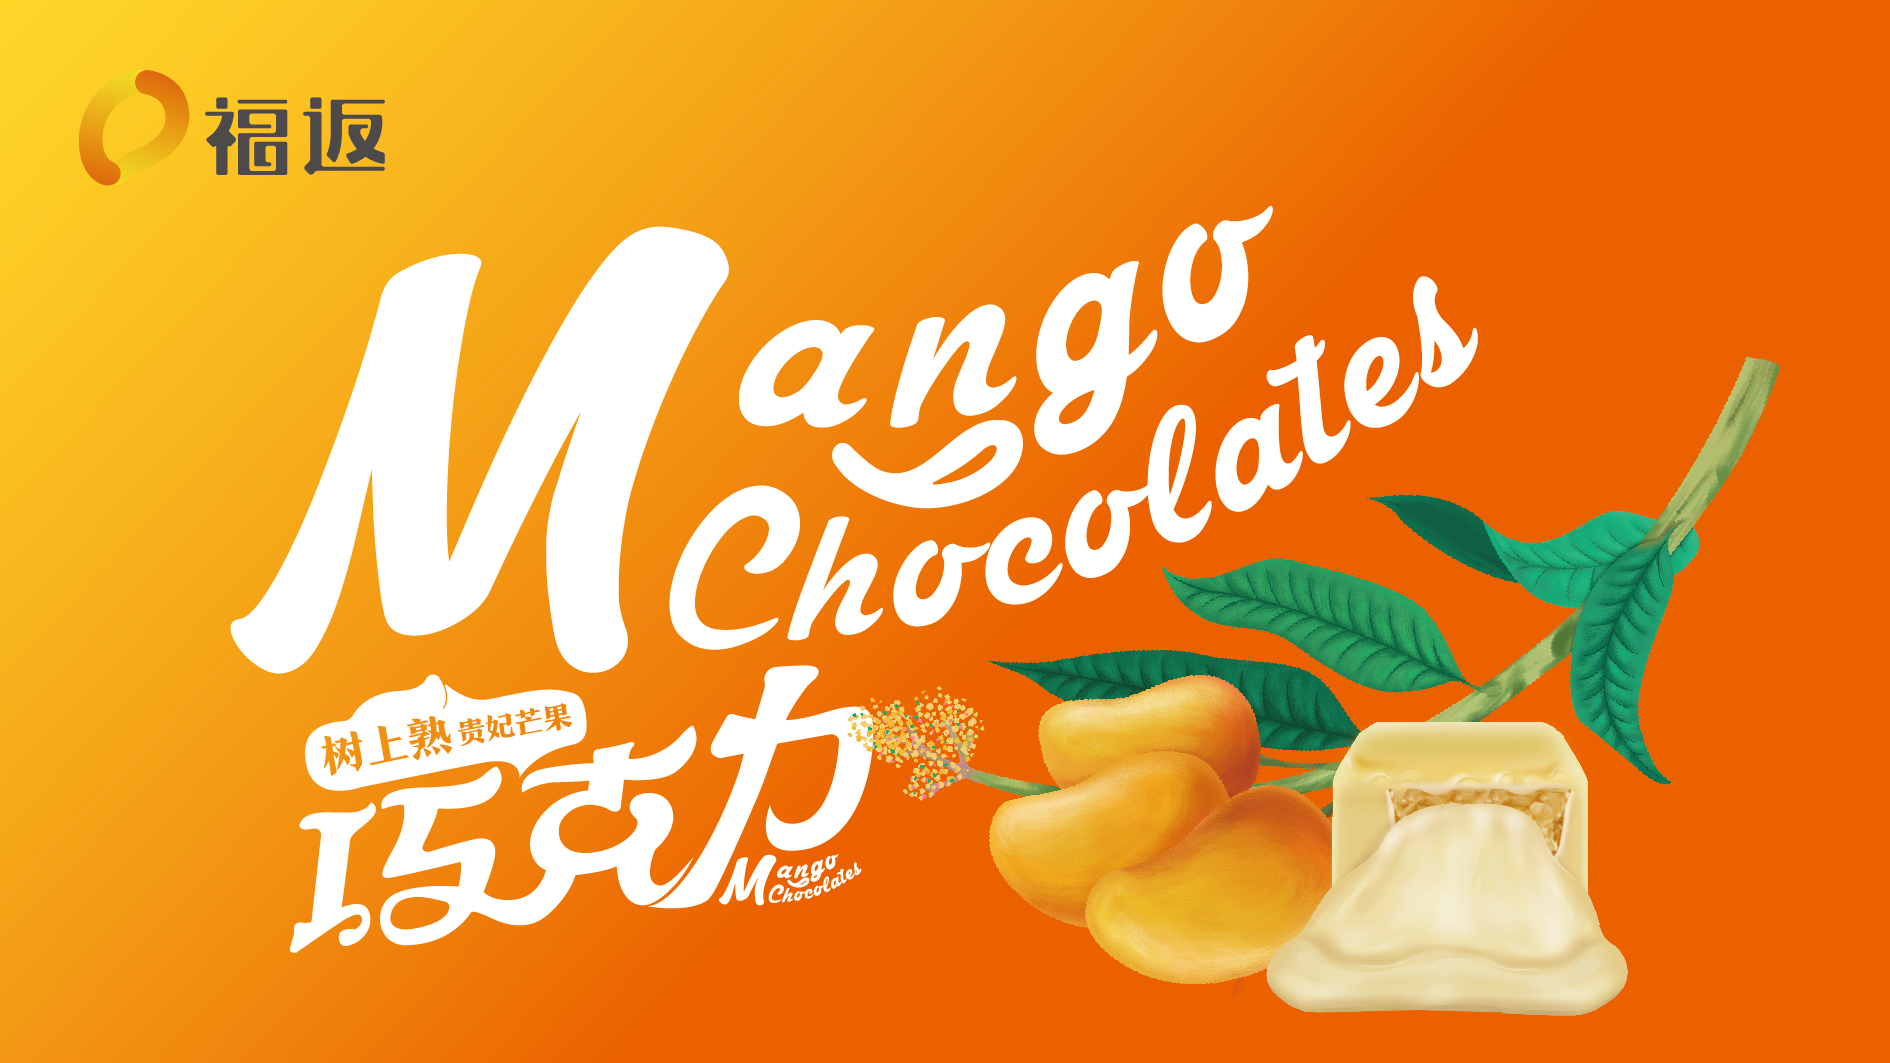 重庆福返芒果巧克力品牌形象设计